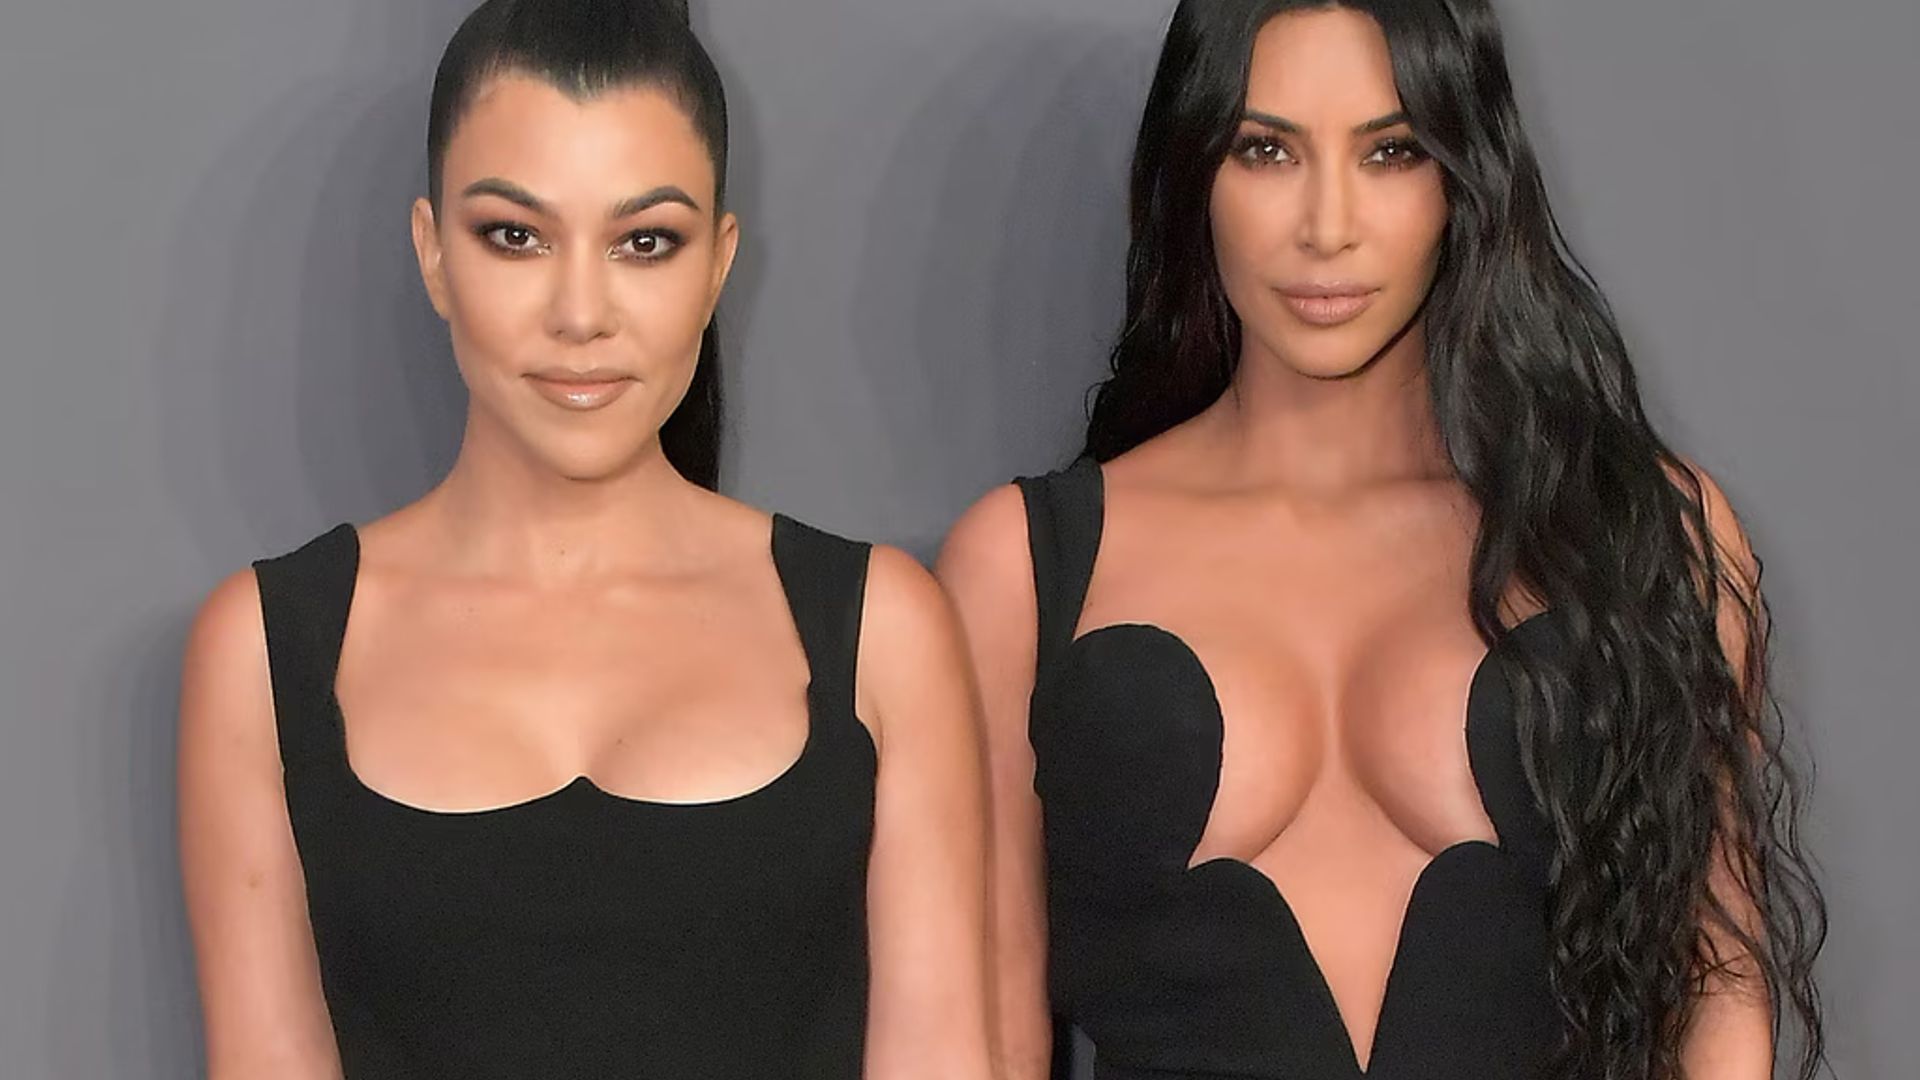 Kourtney Kardashian opens up on feud with sister Kim